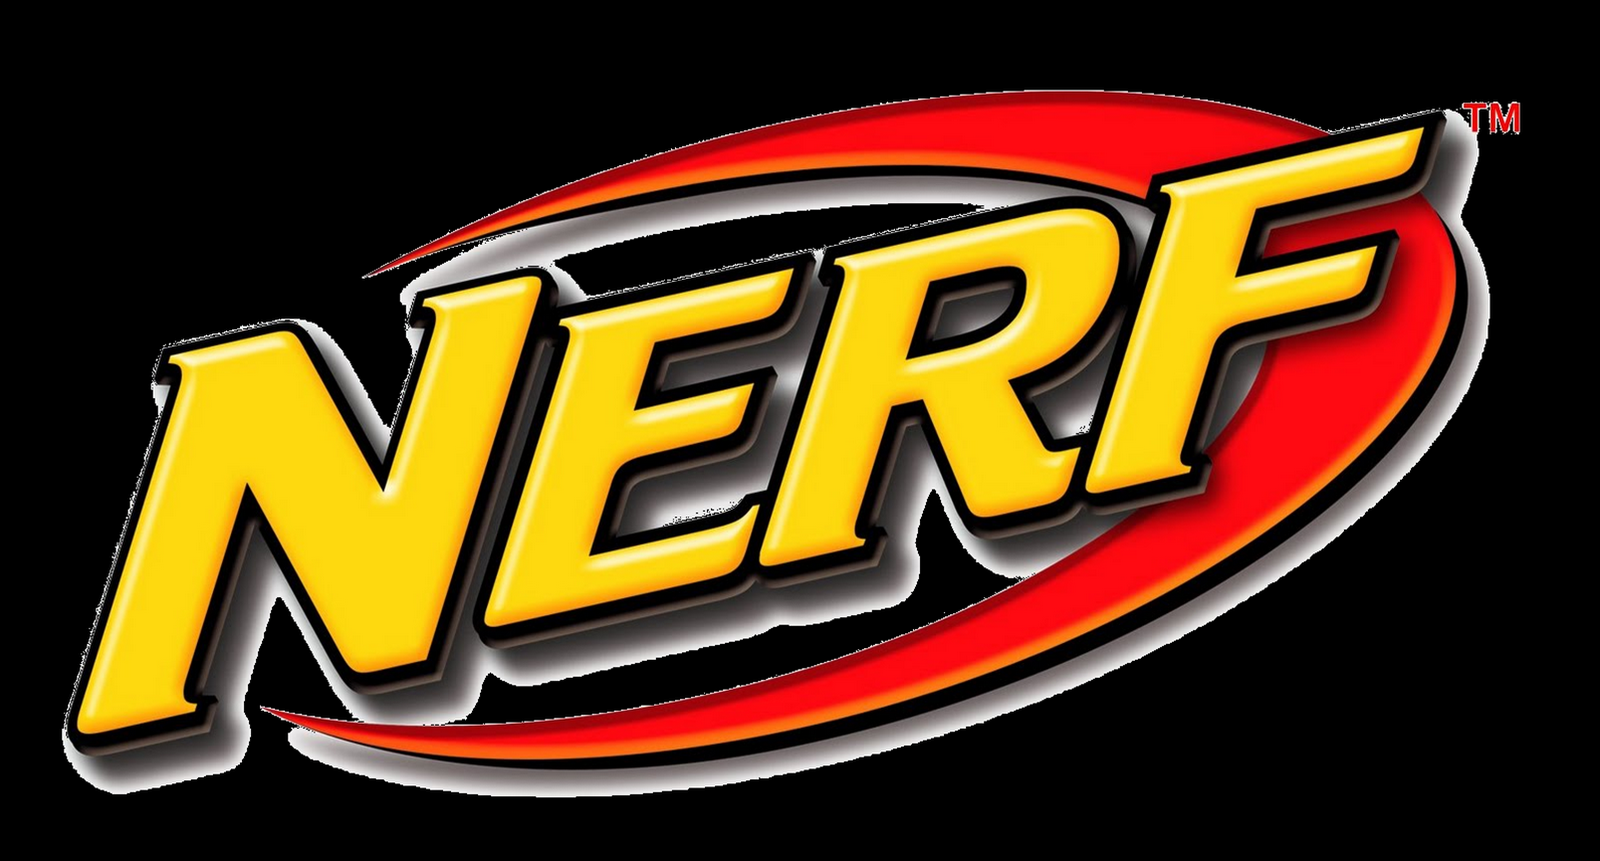 Nerf logo free.